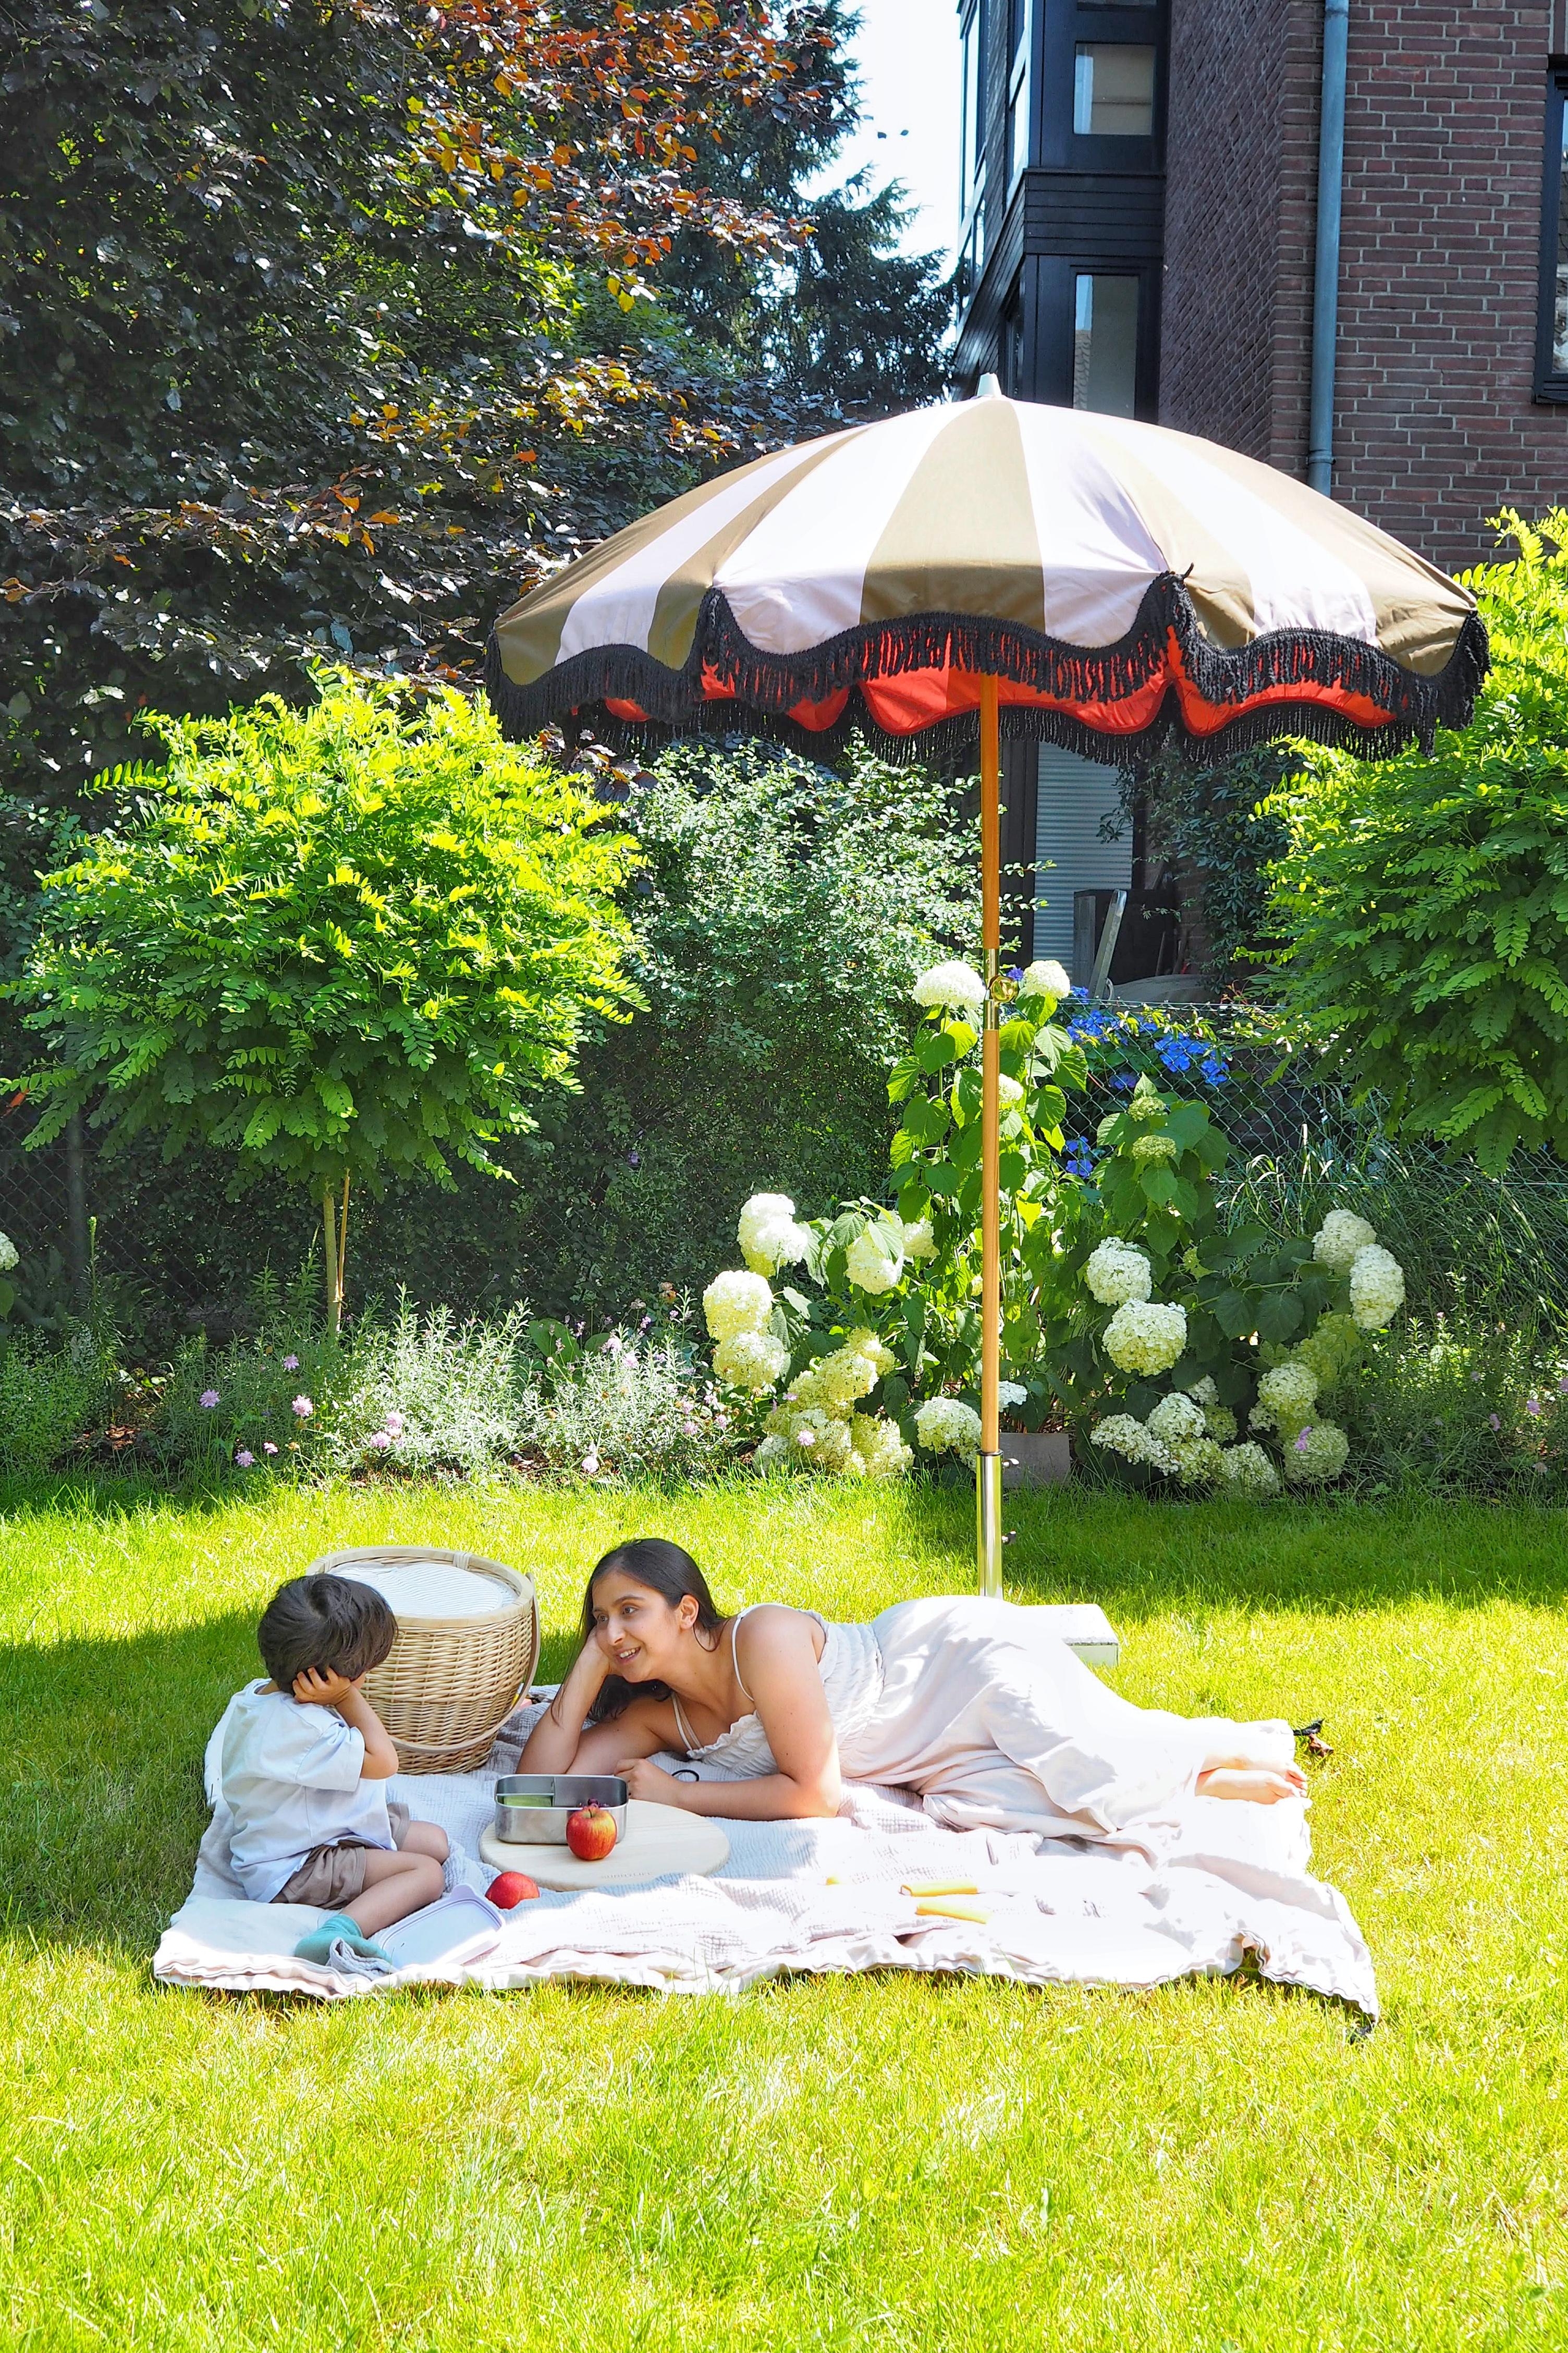 Picknick im Garten.
#lebenmitkindern #gartenliebe